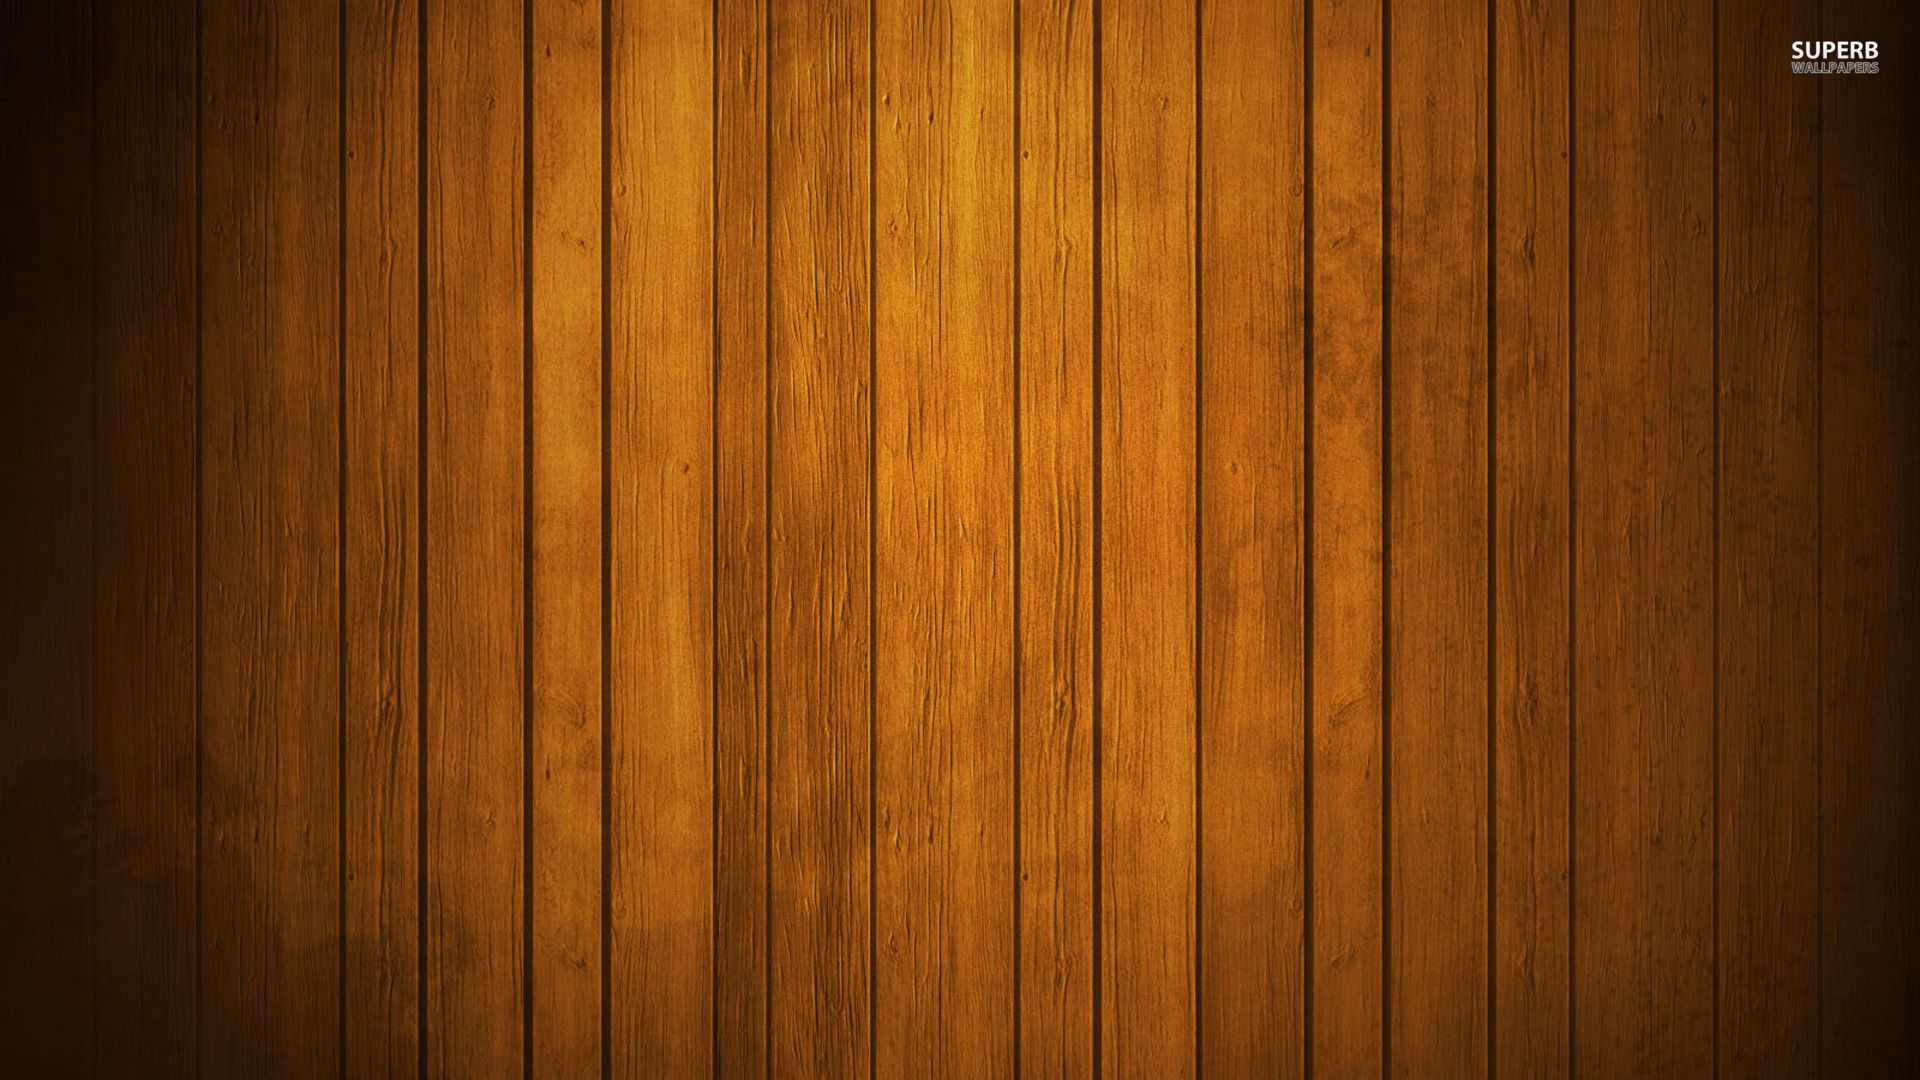 Hình nền gỗ HD là sự kết hợp tuyệt vời giữa chất lượng và thẩm mỹ. Khi được sử dụng làm hình nền, chúng sẽ tạo ra một không gian ấn tượng và đẹp mắt. Hãy khám phá các tùy chọn đa dạng của hình nền gỗ HD và tìm lựa chọn phù hợp với phong cách trang trí của bạn.